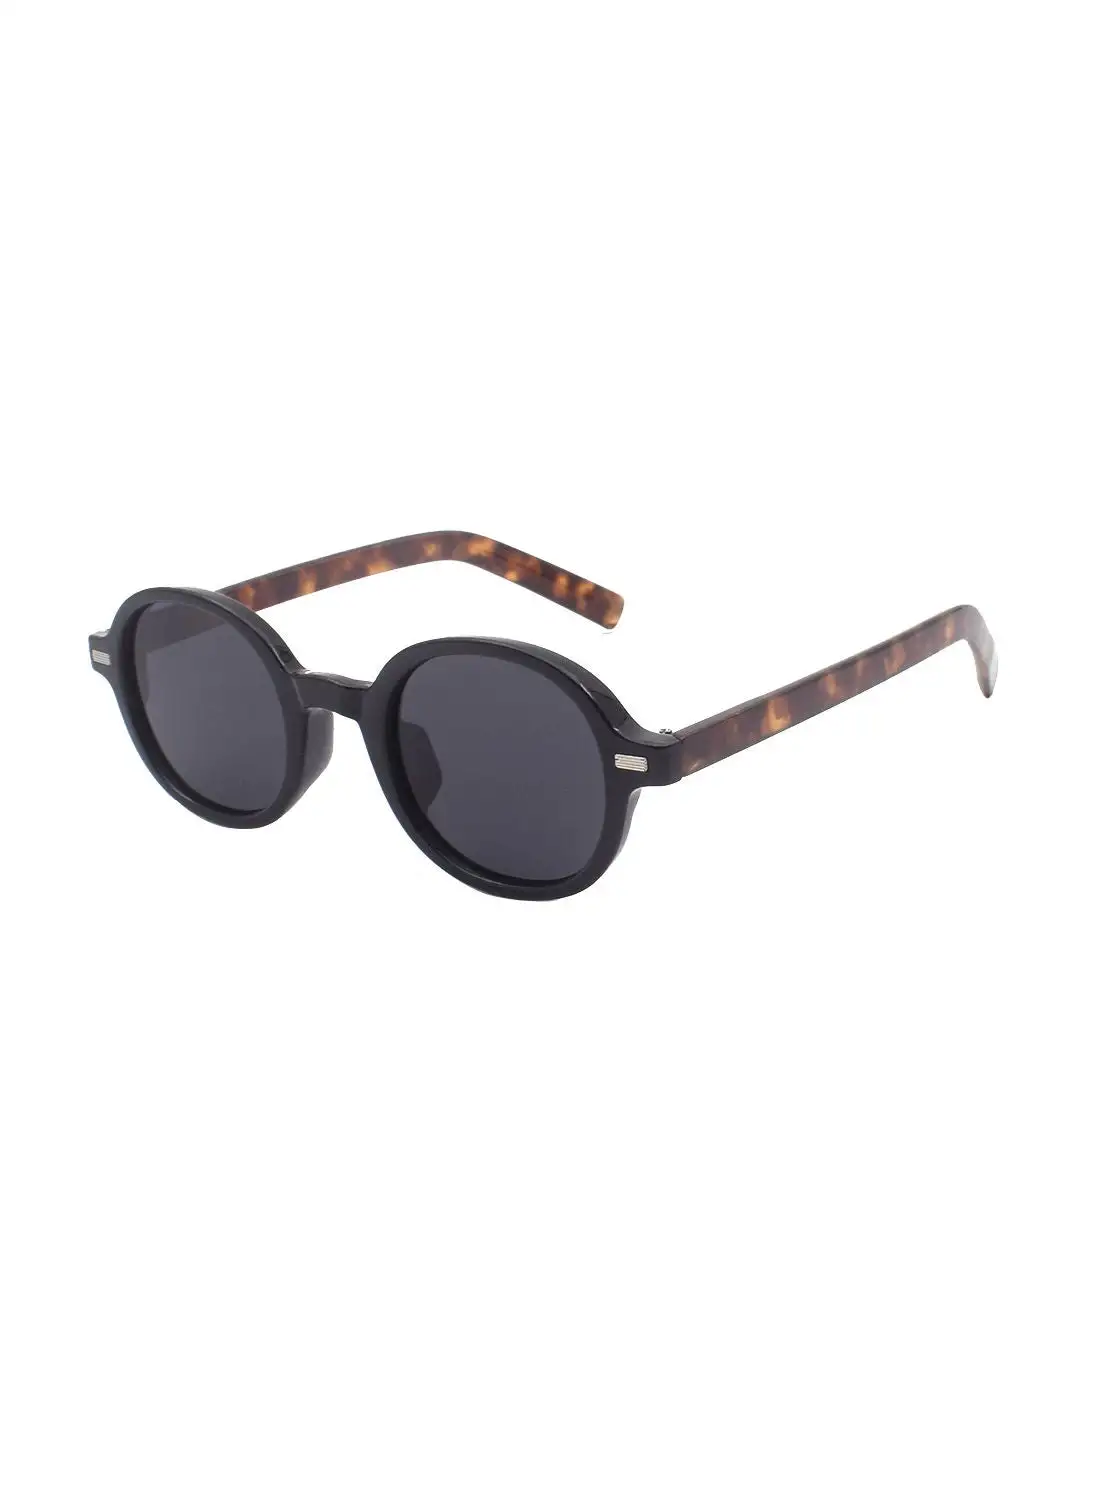 STYLEYEZ Round Sunglasses EE20X061-3